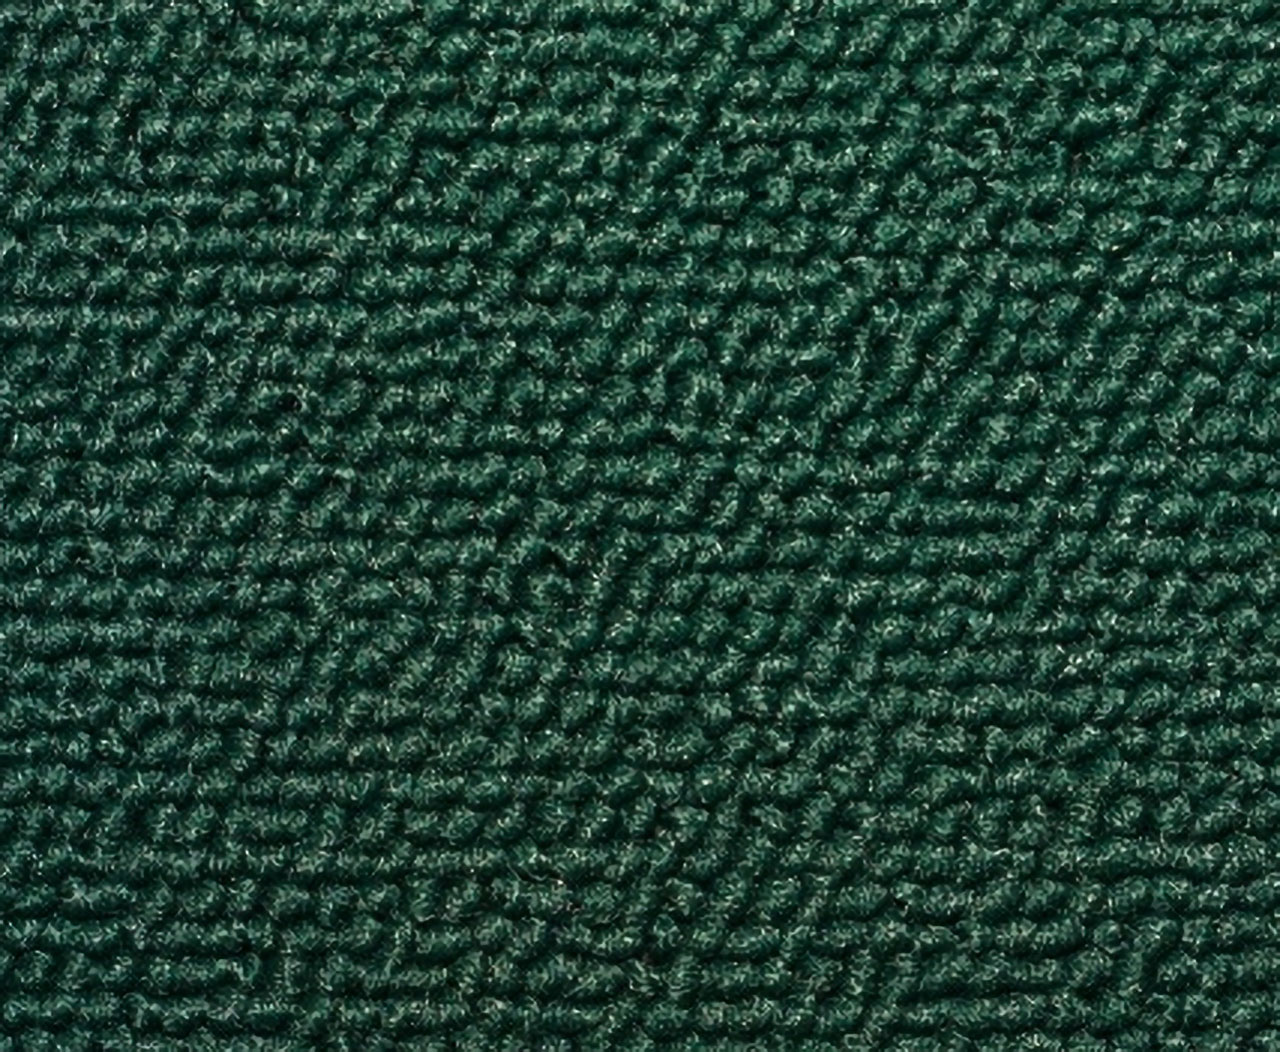 Holden Premier HT Premier Sedan 16T Isis Green & Castillion Weave Carpet (Image 1 of 1)